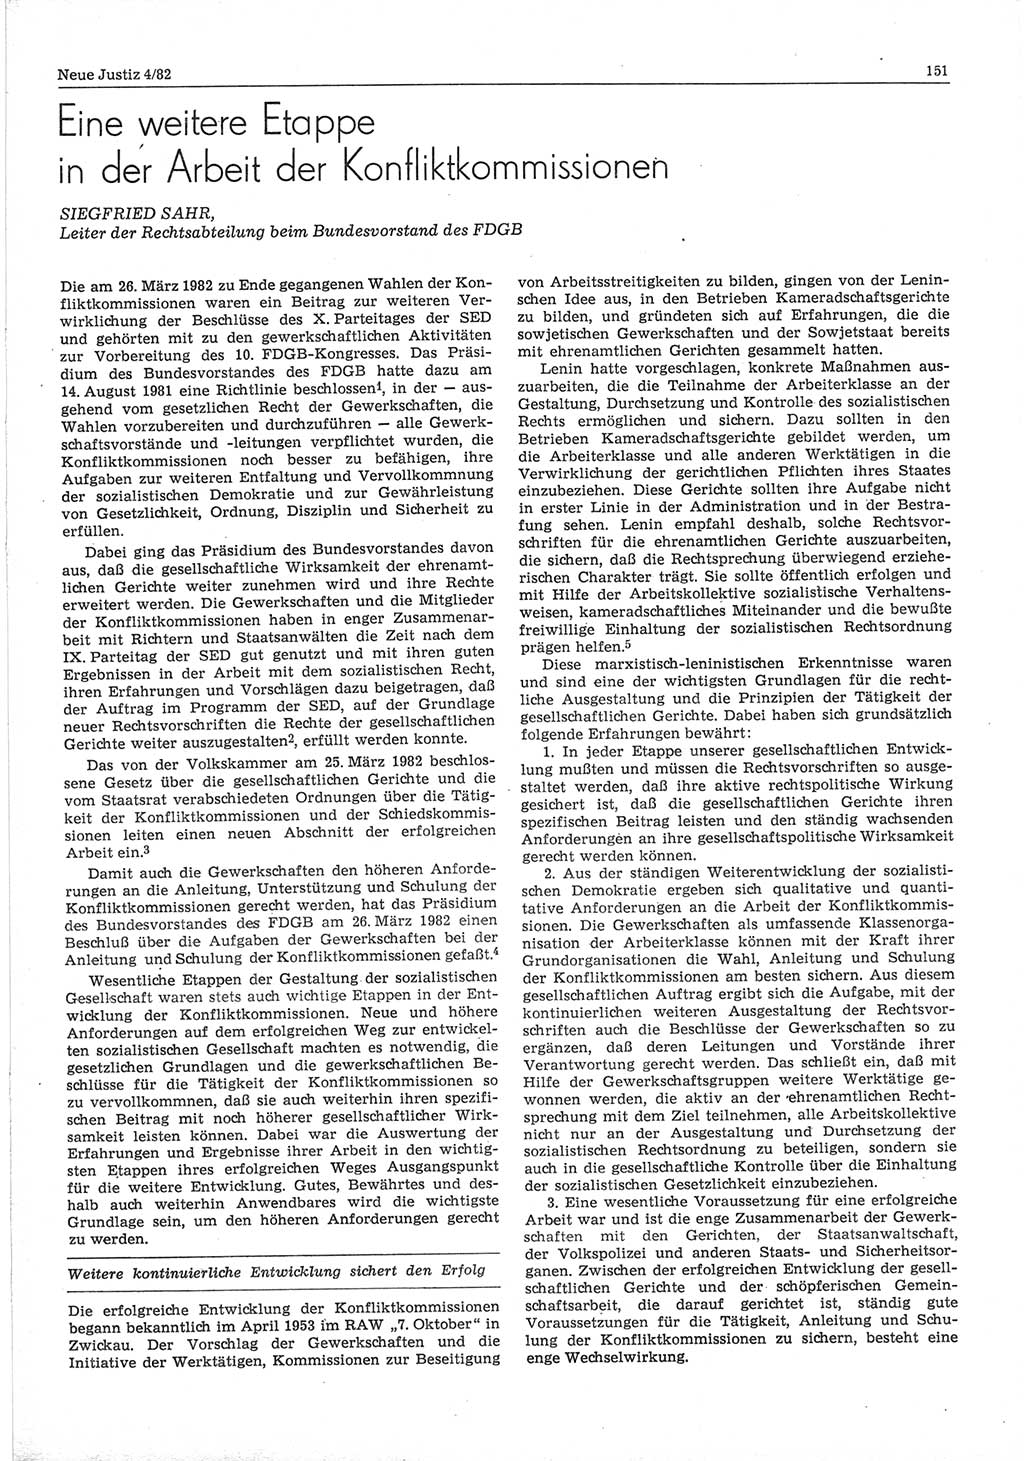 Neue Justiz (NJ), Zeitschrift für sozialistisches Recht und Gesetzlichkeit [Deutsche Demokratische Republik (DDR)], 36. Jahrgang 1982, Seite 151 (NJ DDR 1982, S. 151)